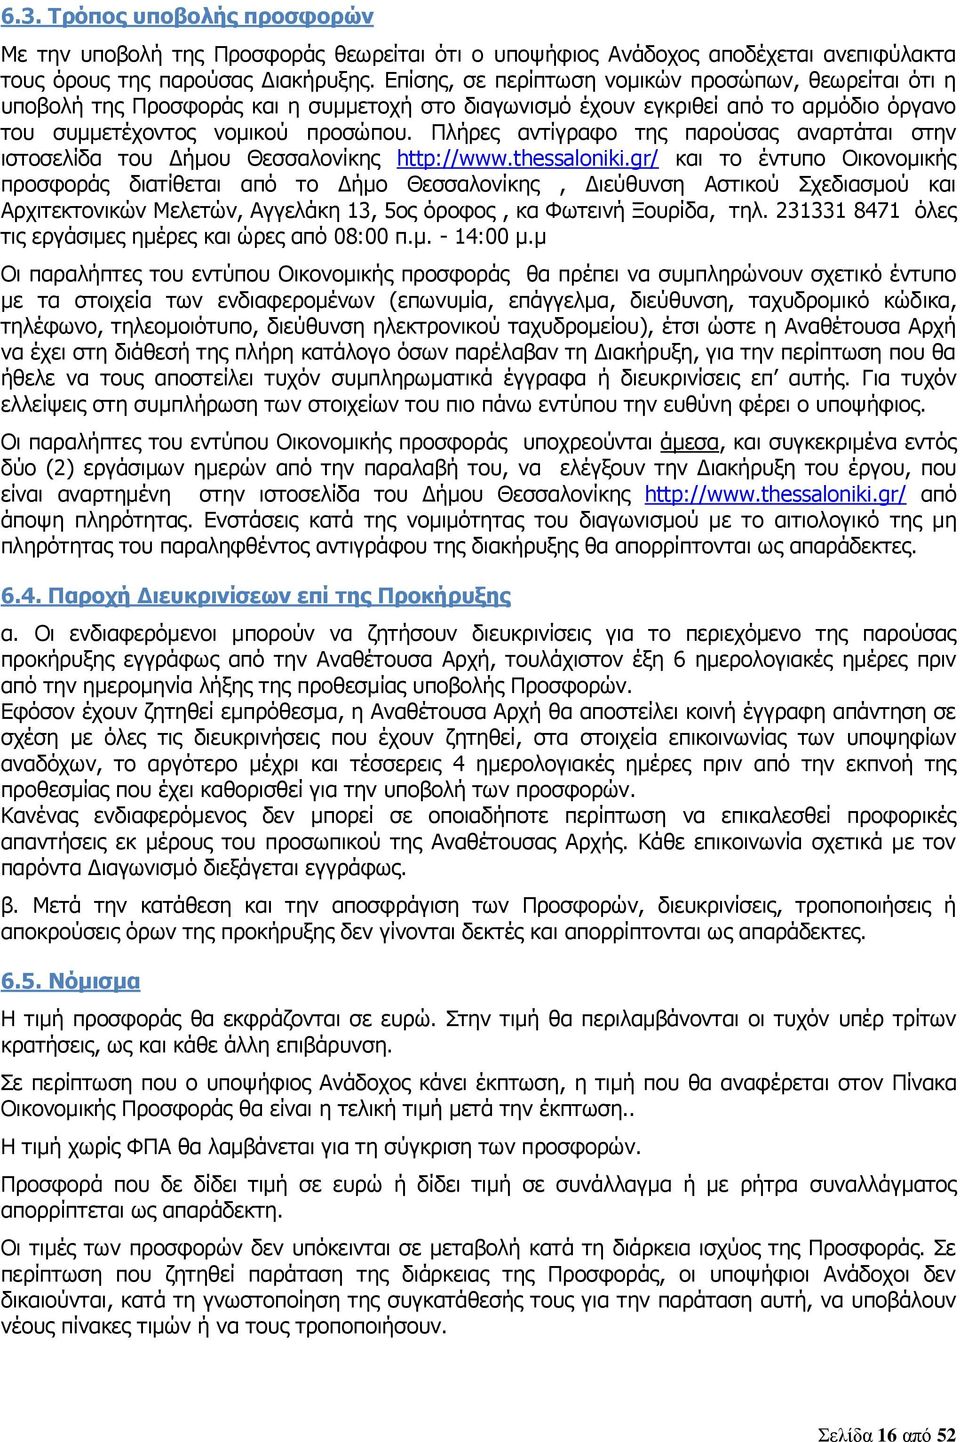 Πλήρες αντίγραφο της παρούσας αναρτάται στην ιστοσελίδα του Δήμου Θεσσαλονίκης http://www.thessaloniki.